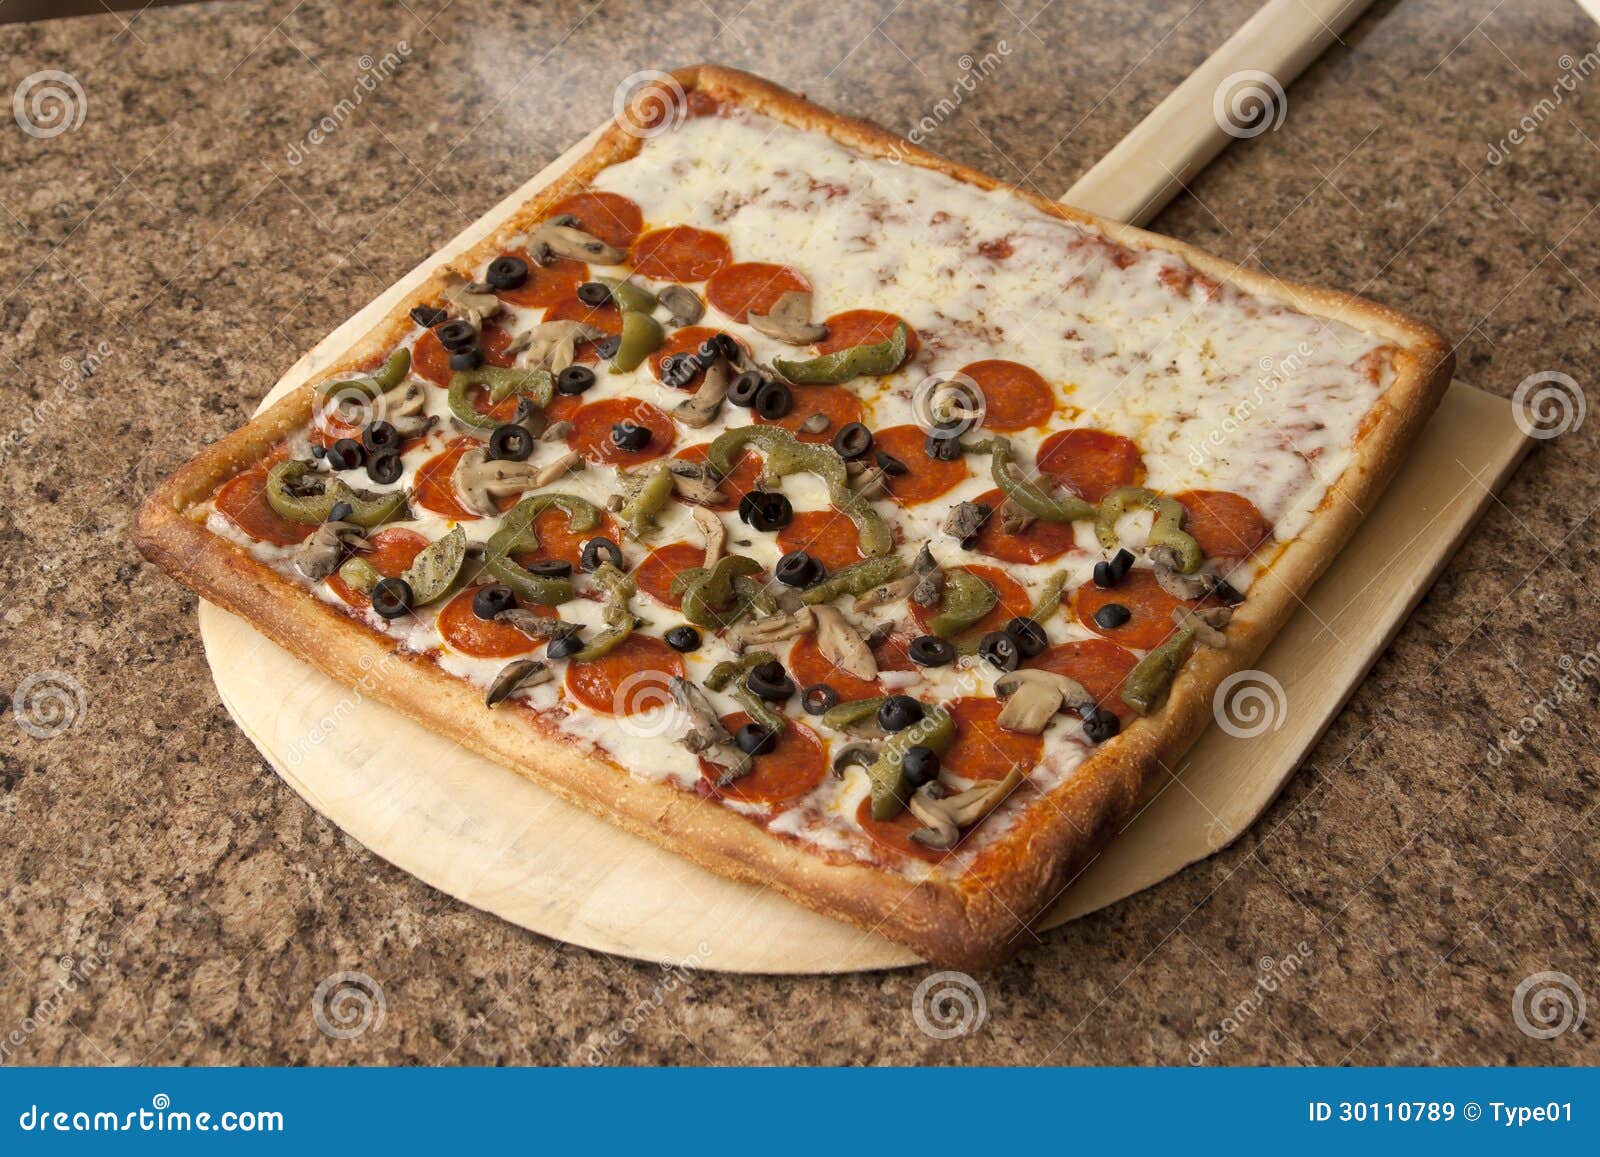 PIZZA  sicilian-oven